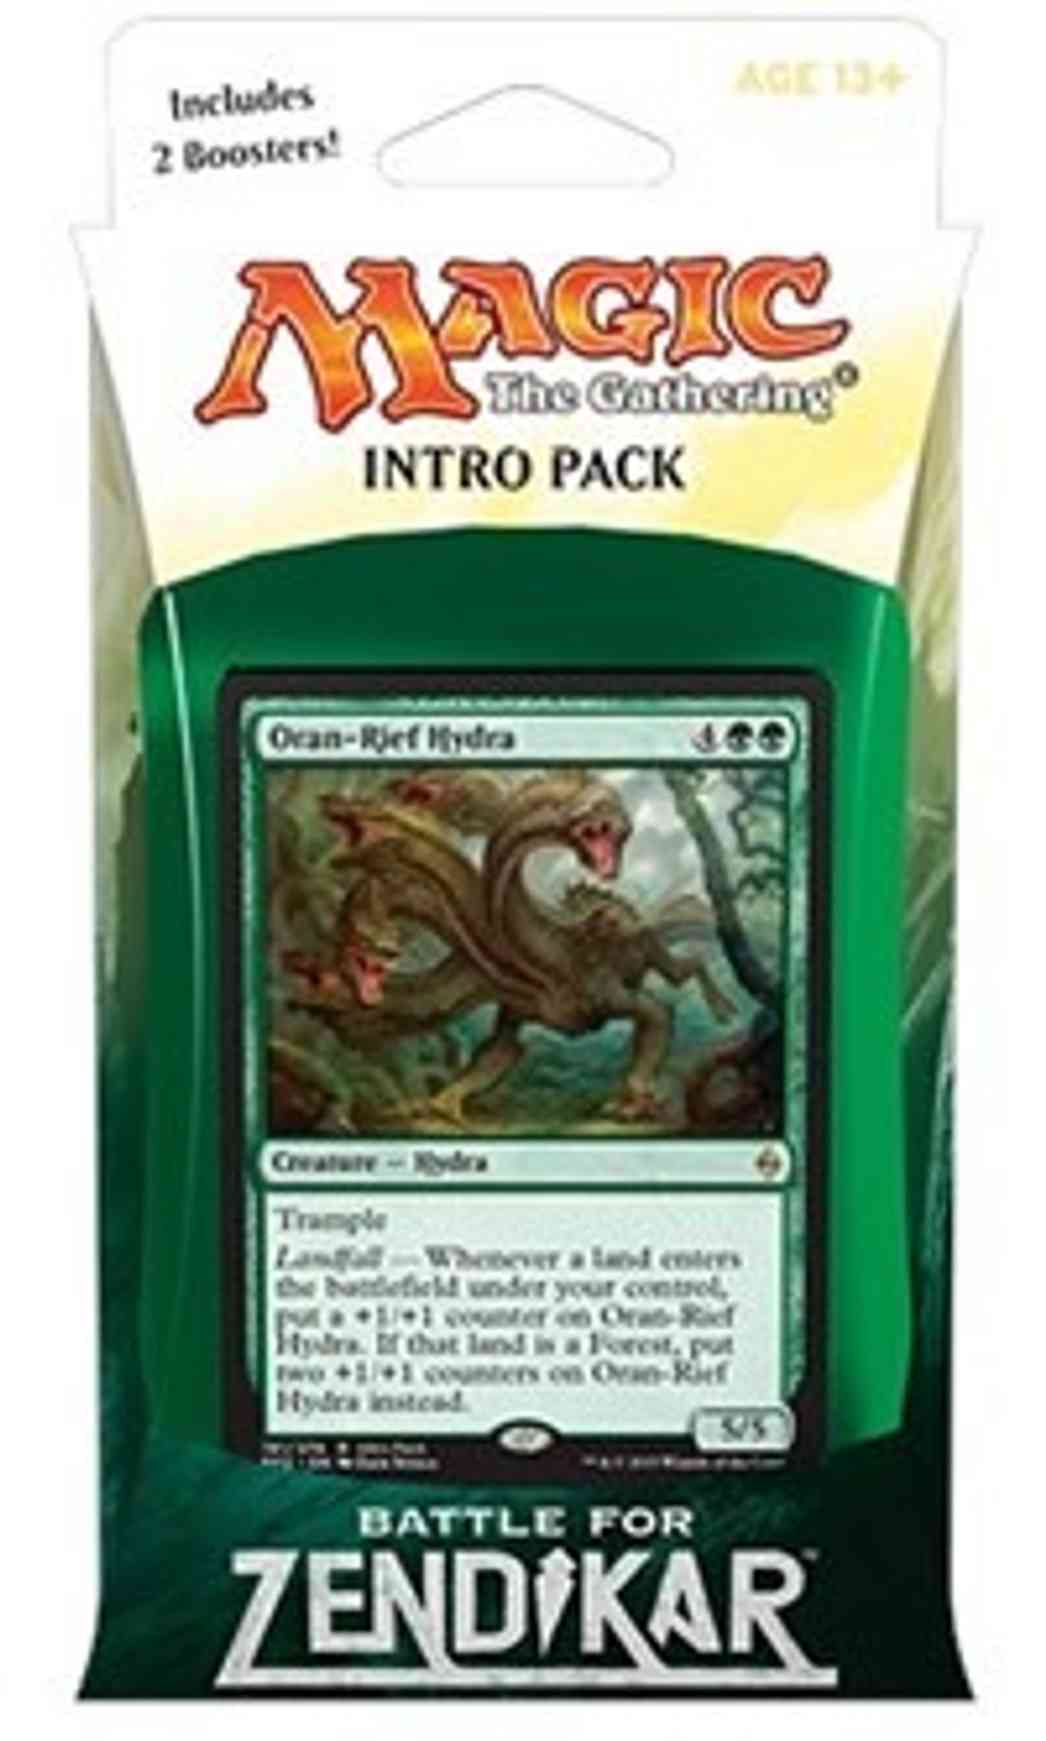 Battle for Zendikar Intro Pack - Green magic card front